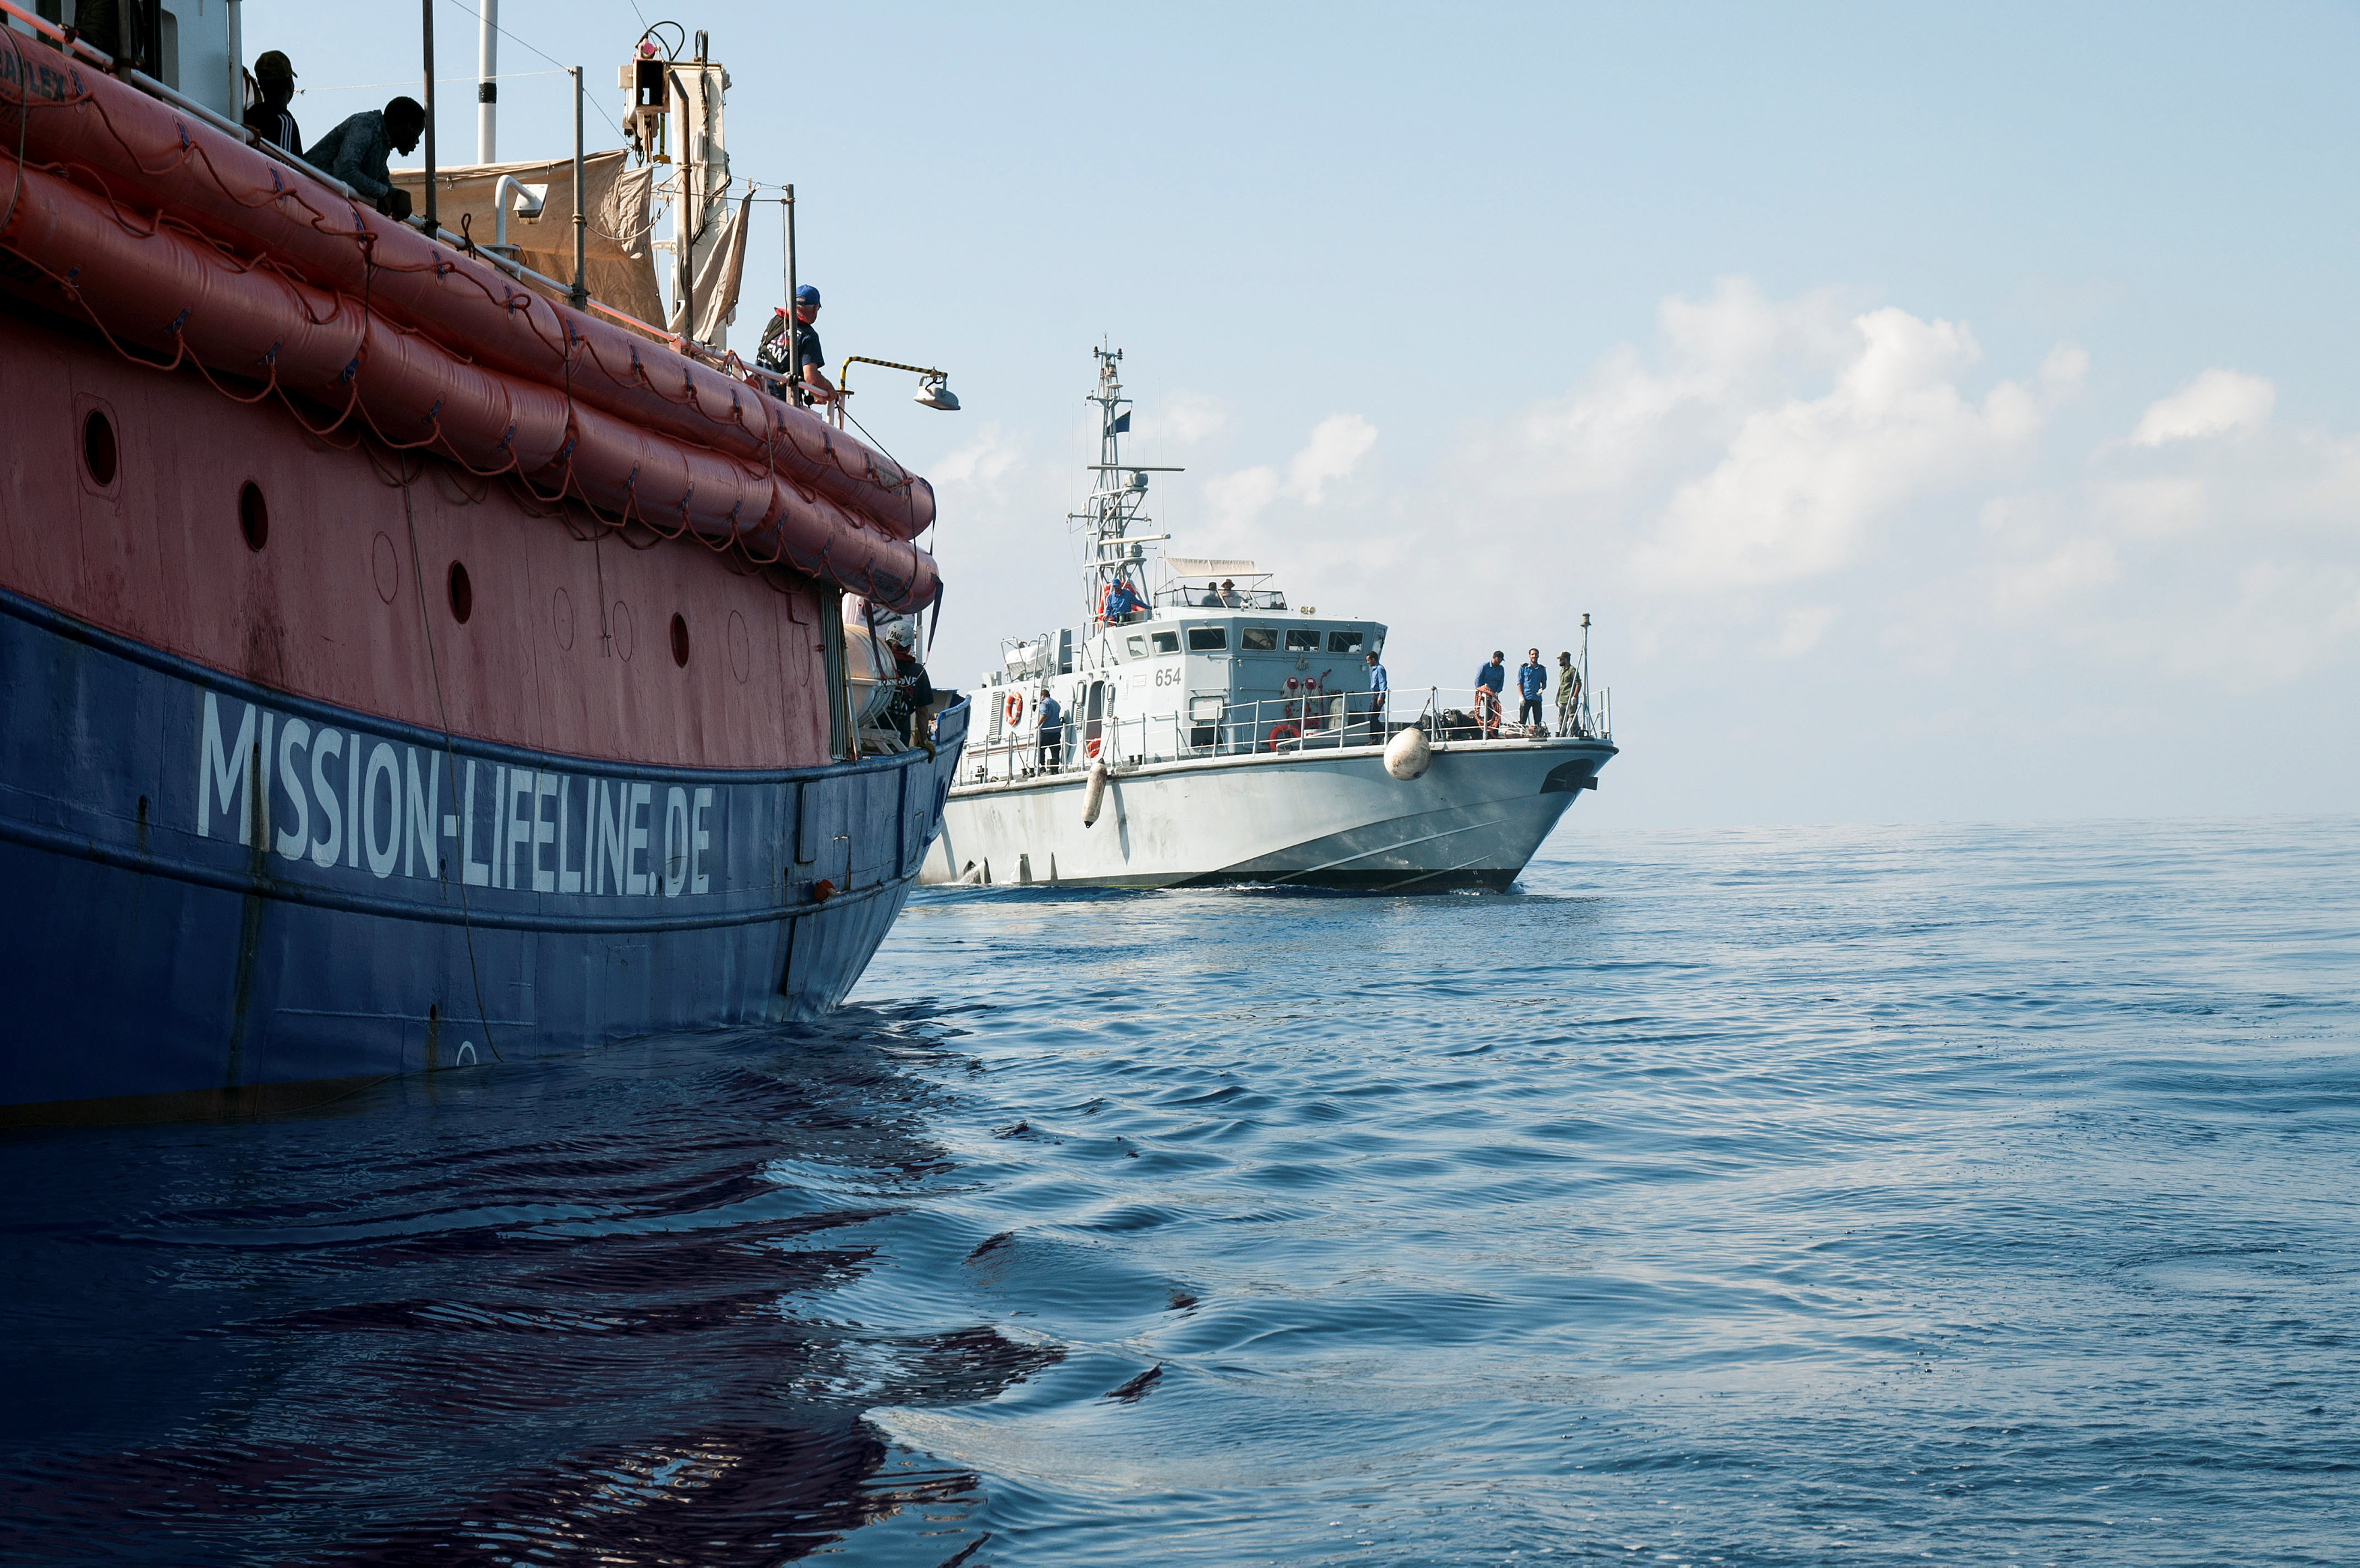 حرس الحدود الليبى يقدم مساعدات لسفينة شريان الحياة